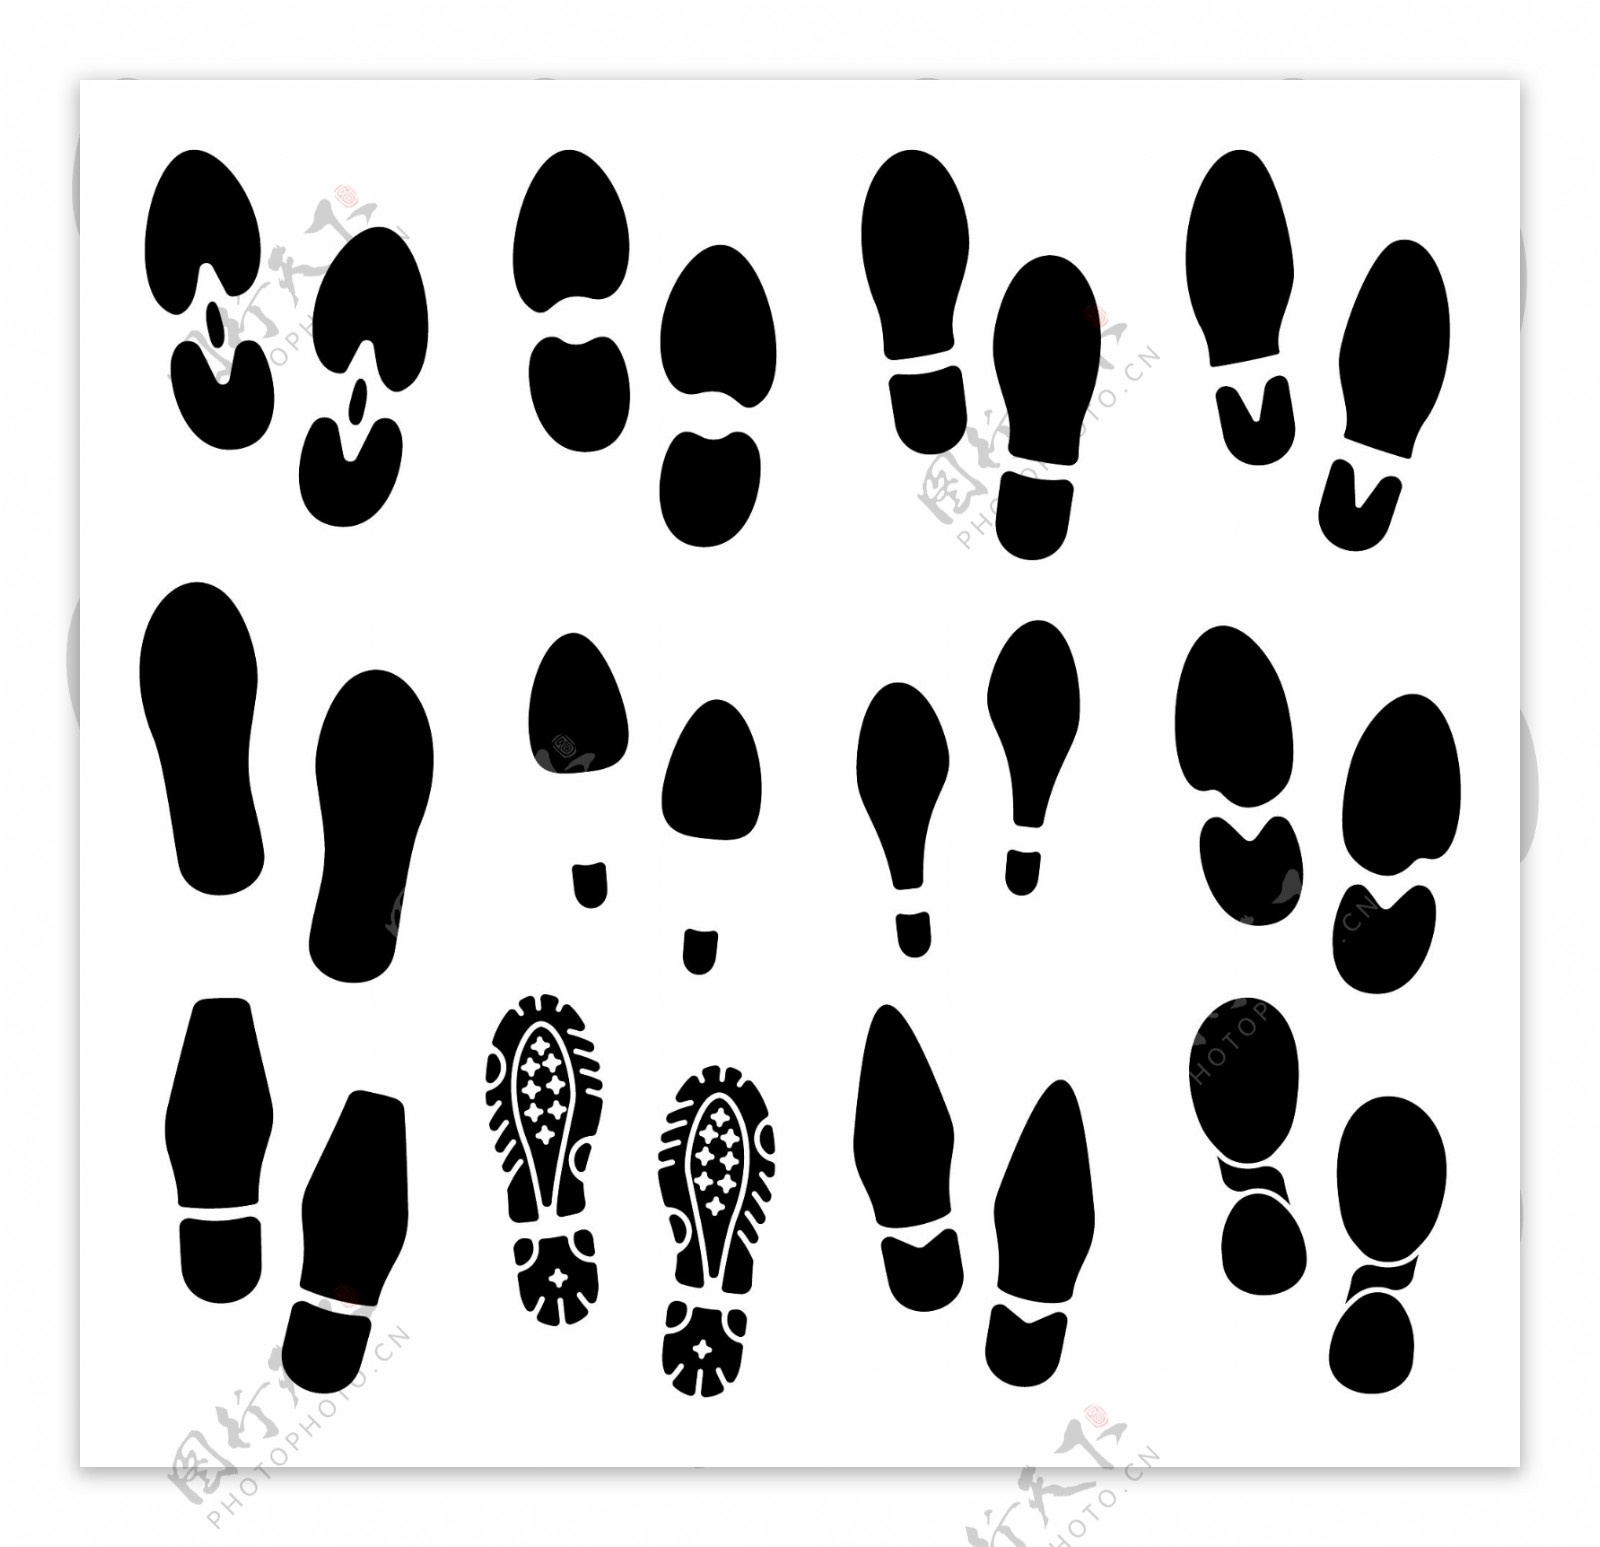 紅色蠟筆腳印插圖 小腳丫 可愛 小孩的腳印, 成長, 五個腳趾, 紅色蠟筆腳印插圖素材圖案，PSD和PNG圖片免費下載